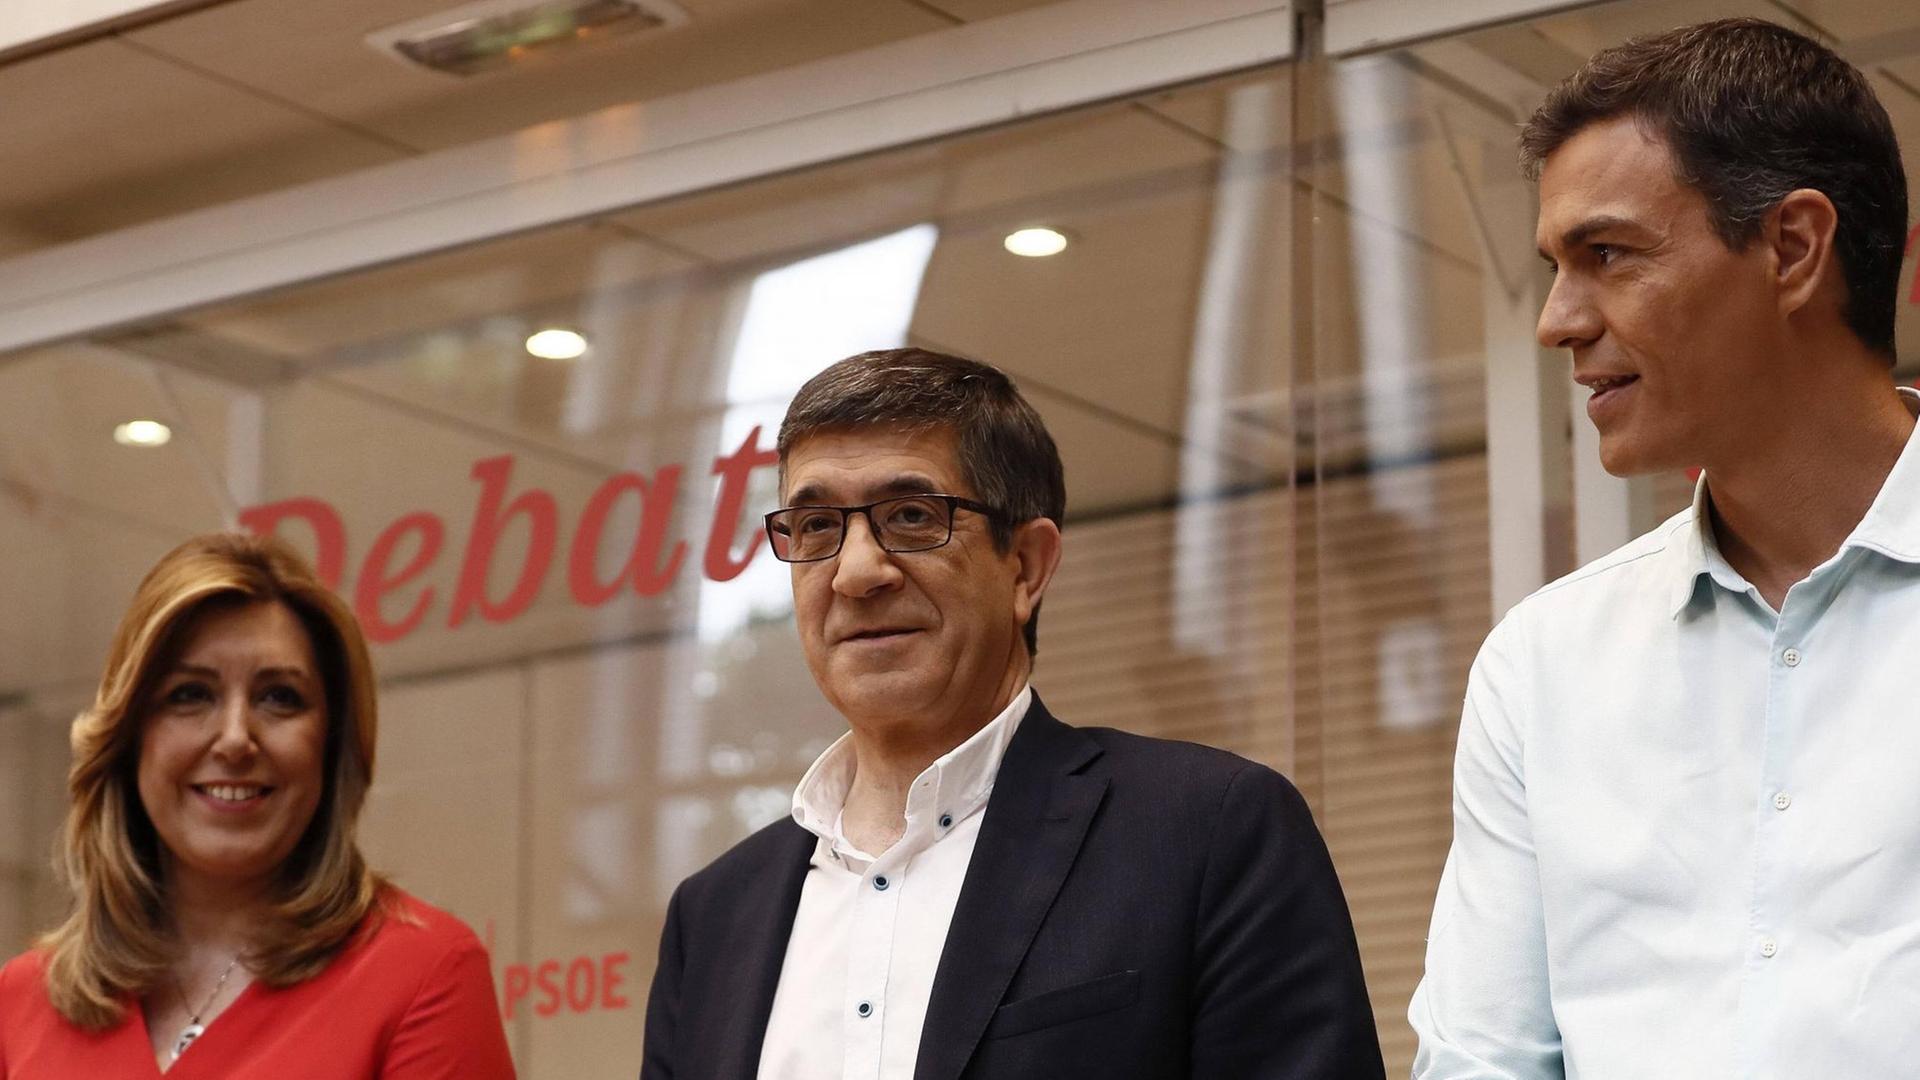 Die Kandidaten um die Spitze der PSOE: Susana Diaz (li.) mit Patxi Lopez und Pedro Sanchez (re.) im Mai 2017